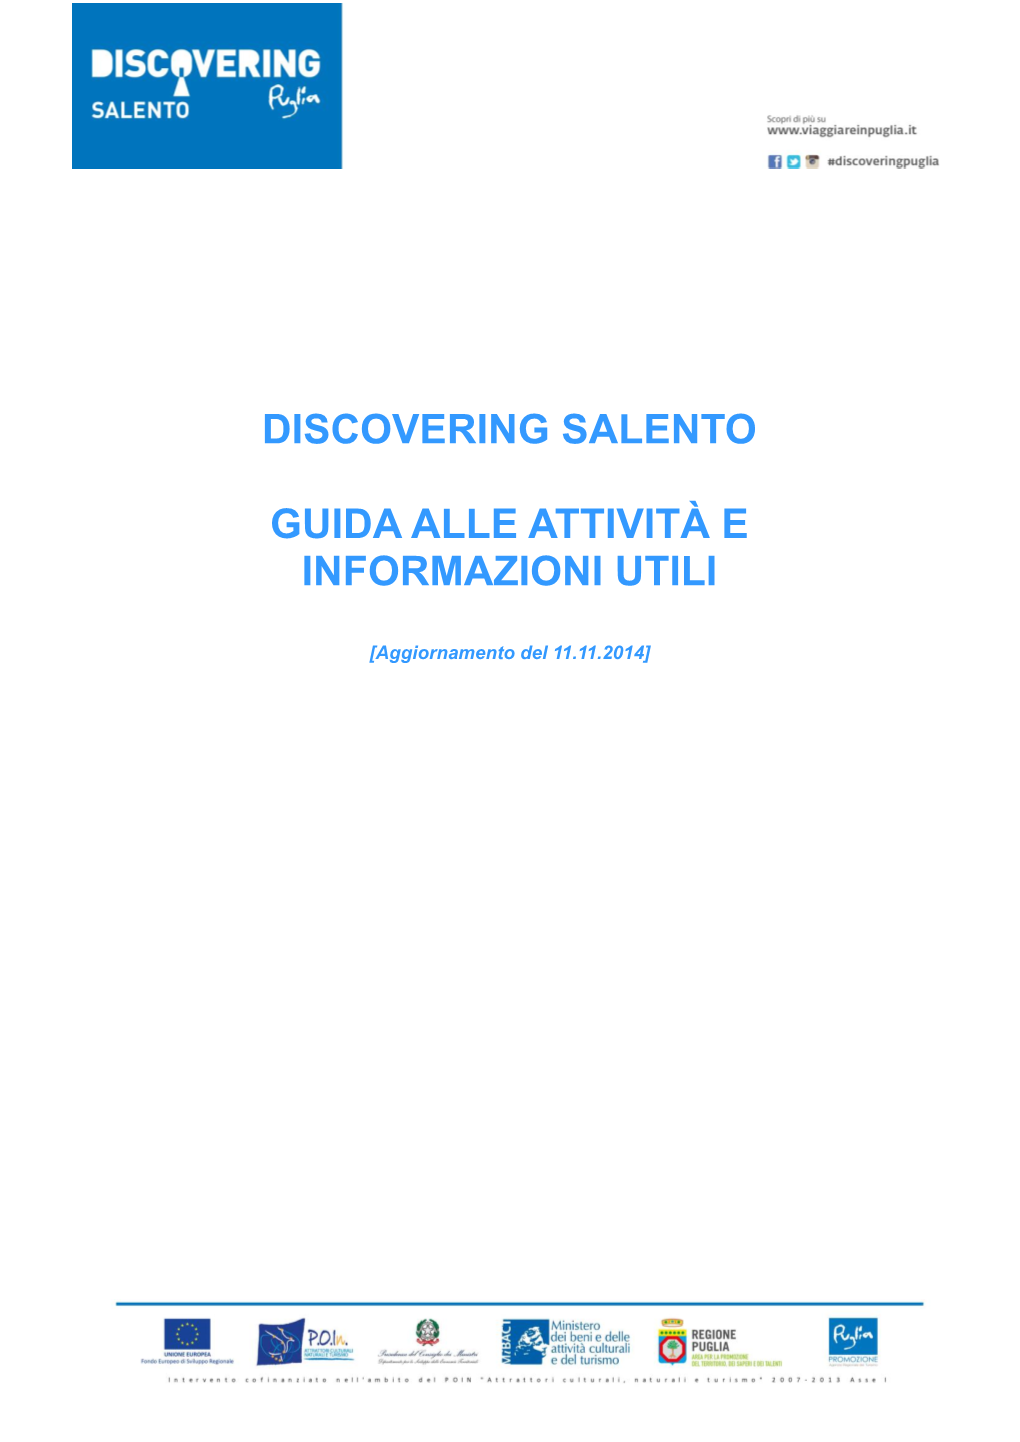 Discovering Salento Guida Alle Attività E Informazioni